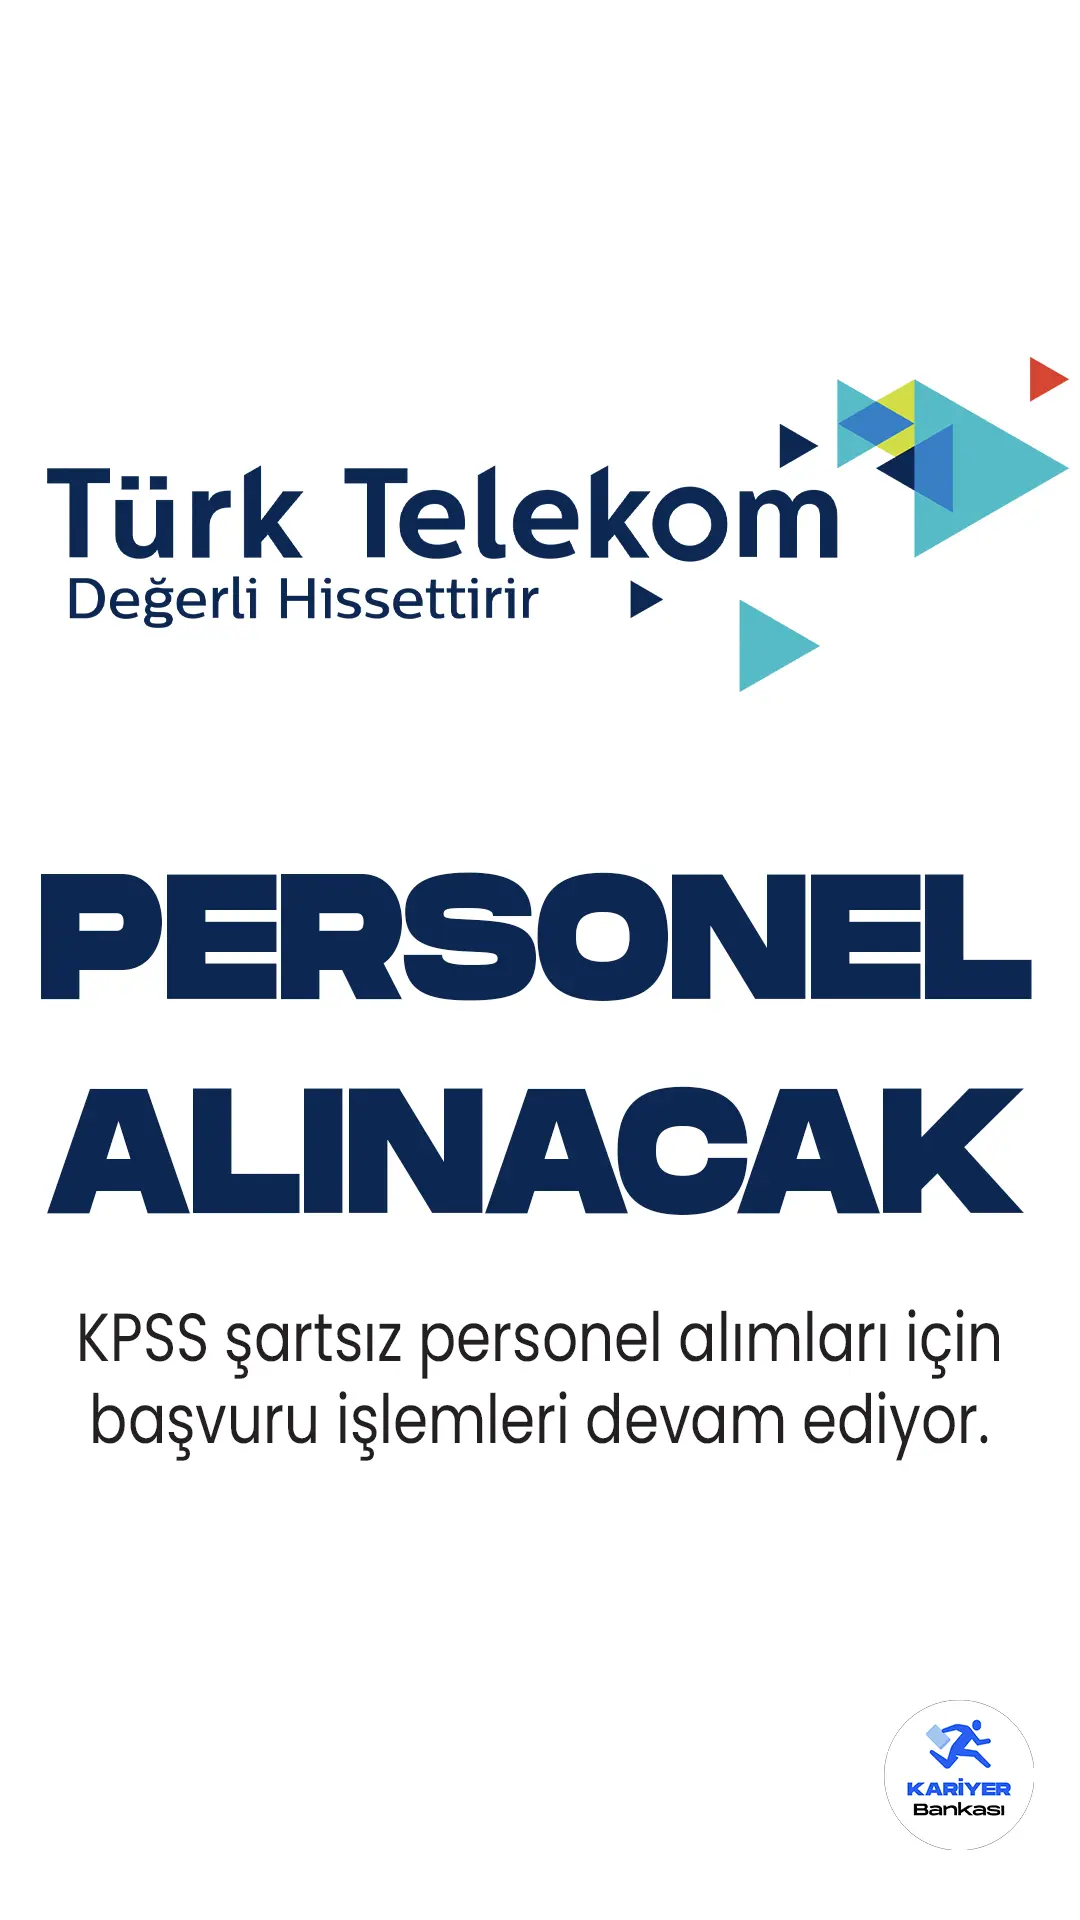 Türk Telekom Kariyer sayfasında yayımlanan personel alımı ilanlarına başvurular devam ediyor.